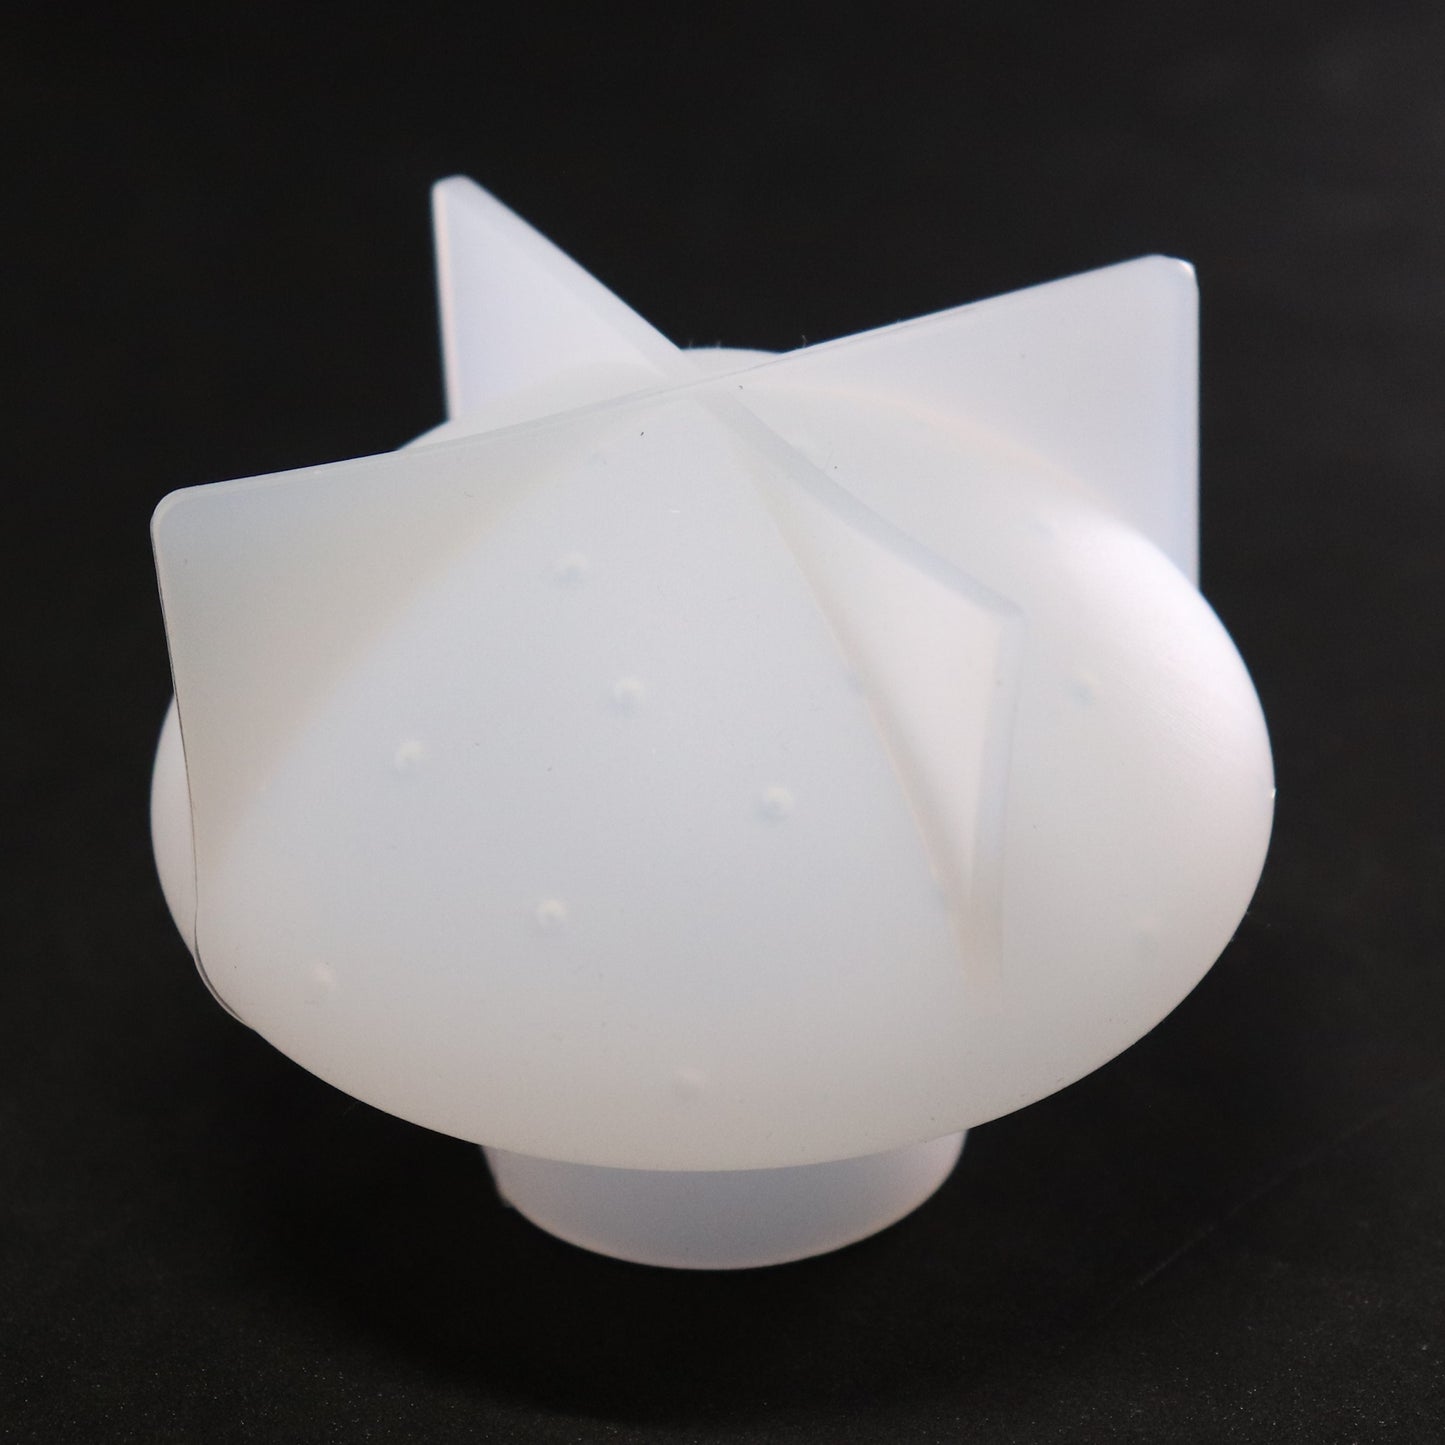 Silikonform 3D Pilz Gießform für Epoxidharz, Raysin ca. 6 cm